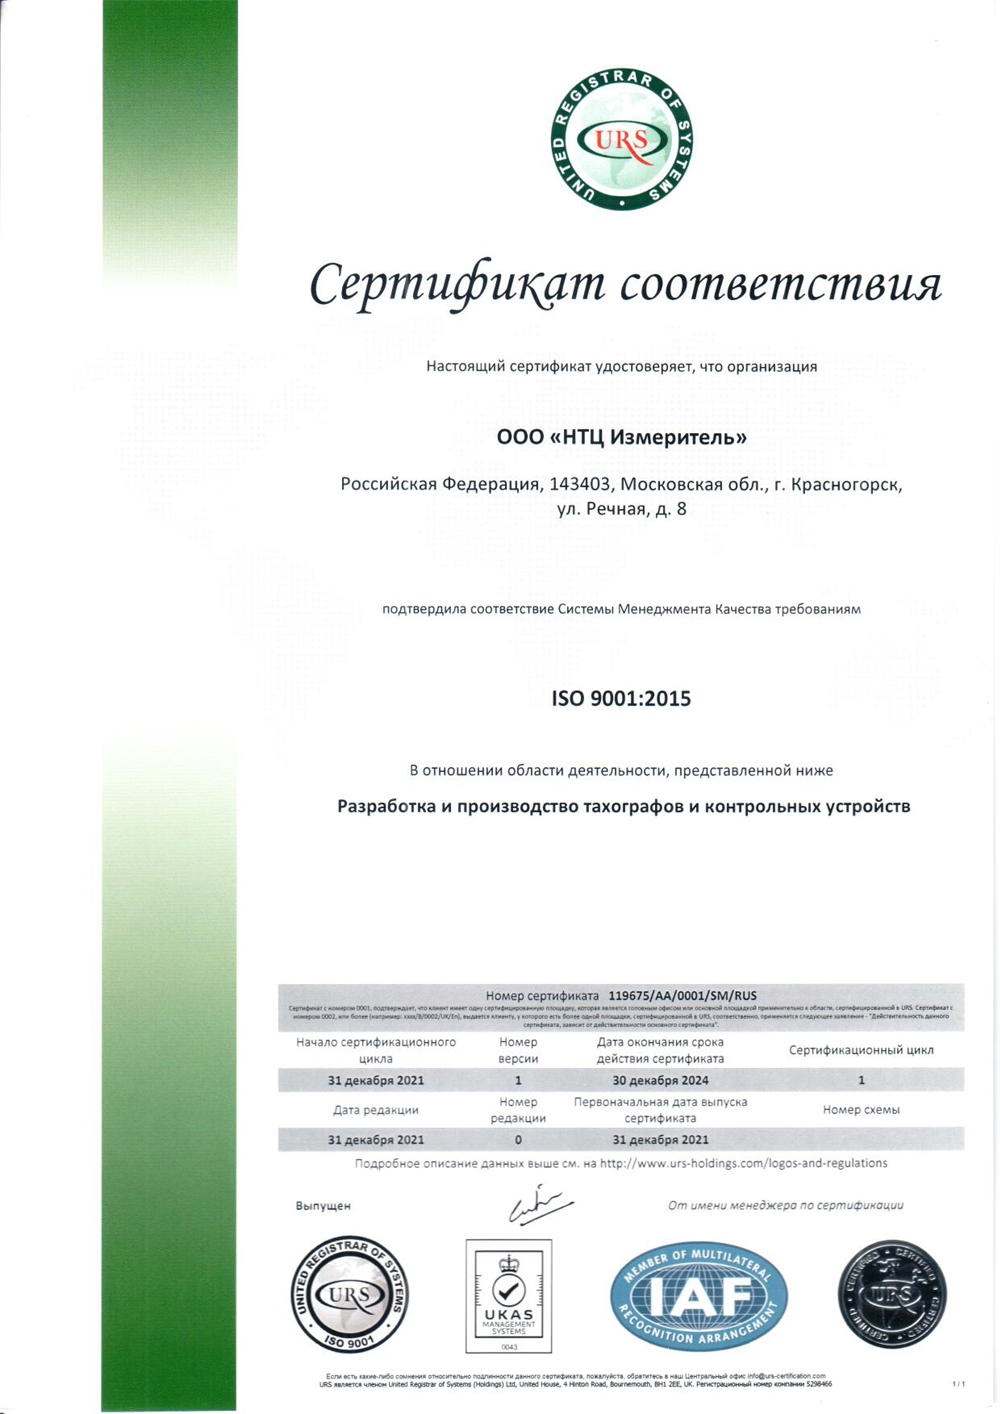 Сертификат соответствия системе менеджмента качества ISO 9001:2015 Разработка и производство тахографов и контрольных устройств RUS